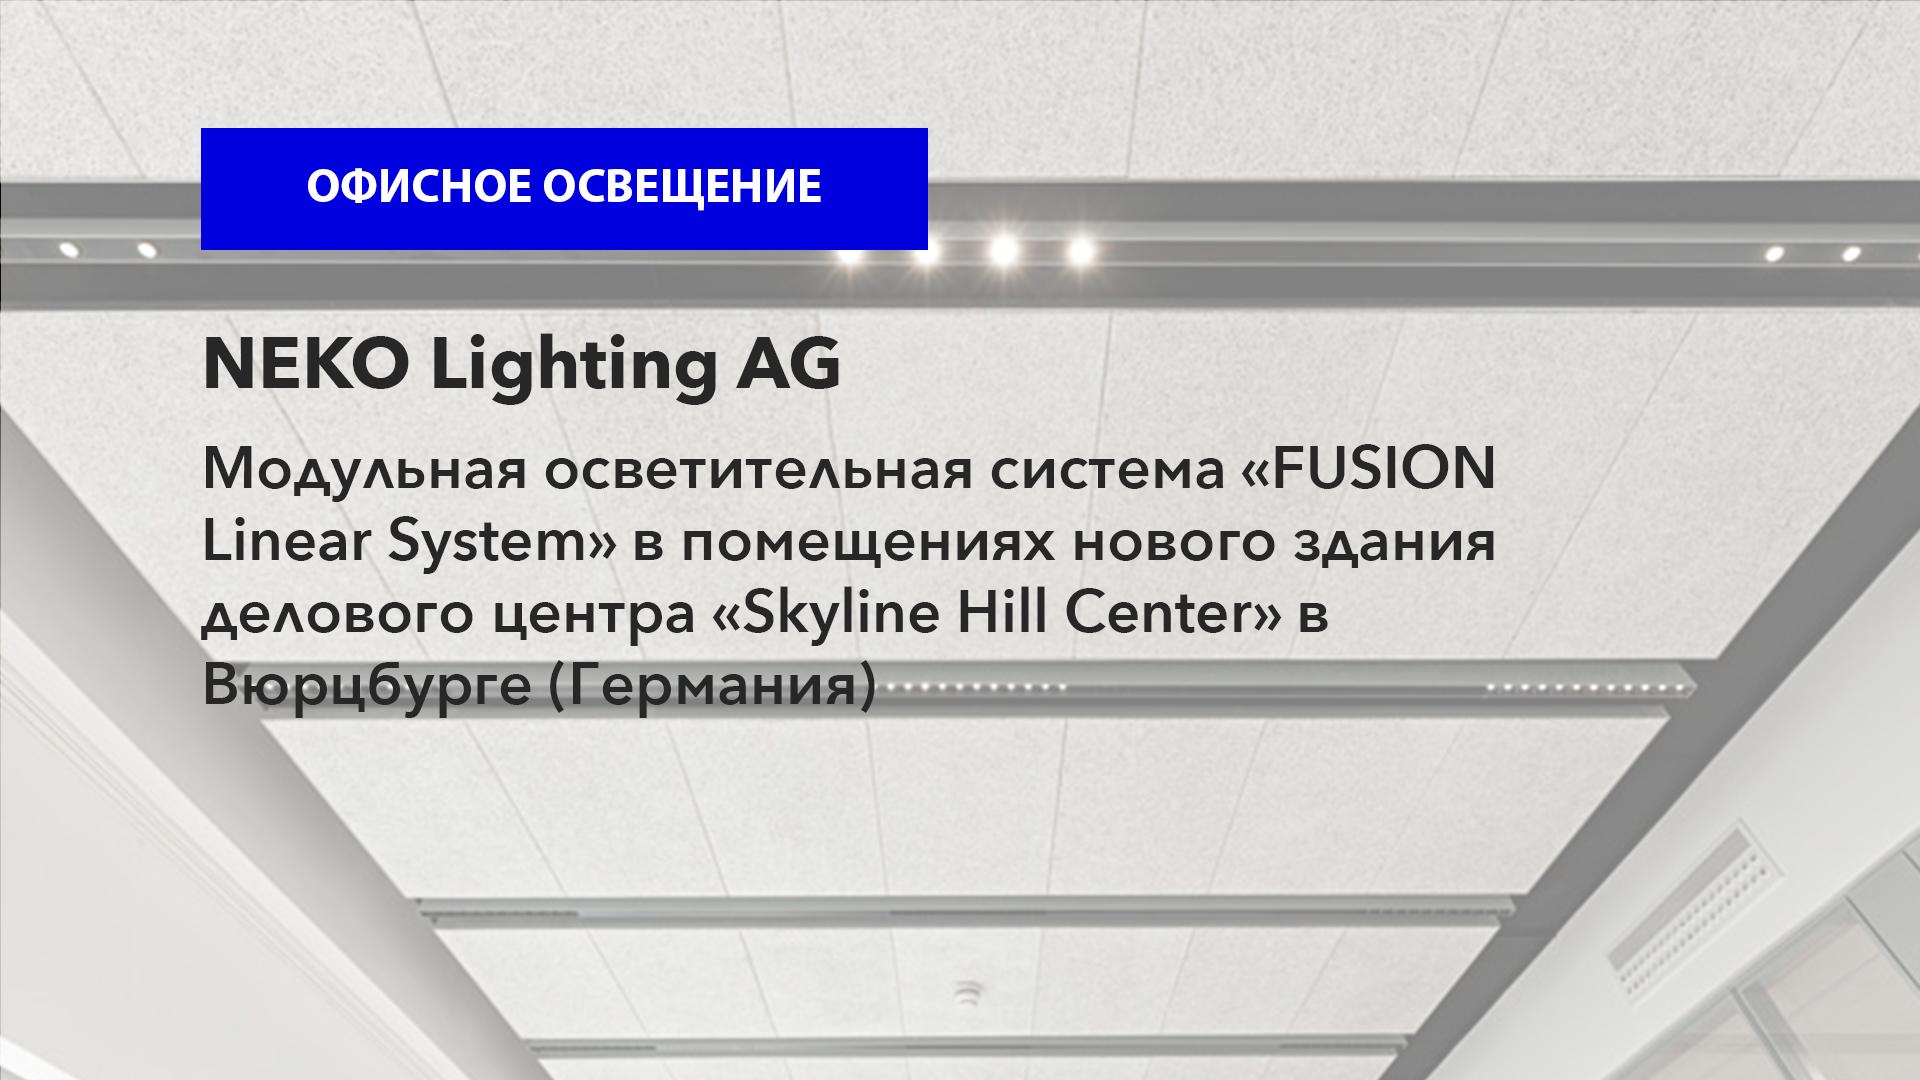 Фирма NEKO Lighting AG: модульная осветительная система «FUSION Linear System» в помещениях здания делового центра «Skyline Hill Center» в Вюрцбурге (Германия)